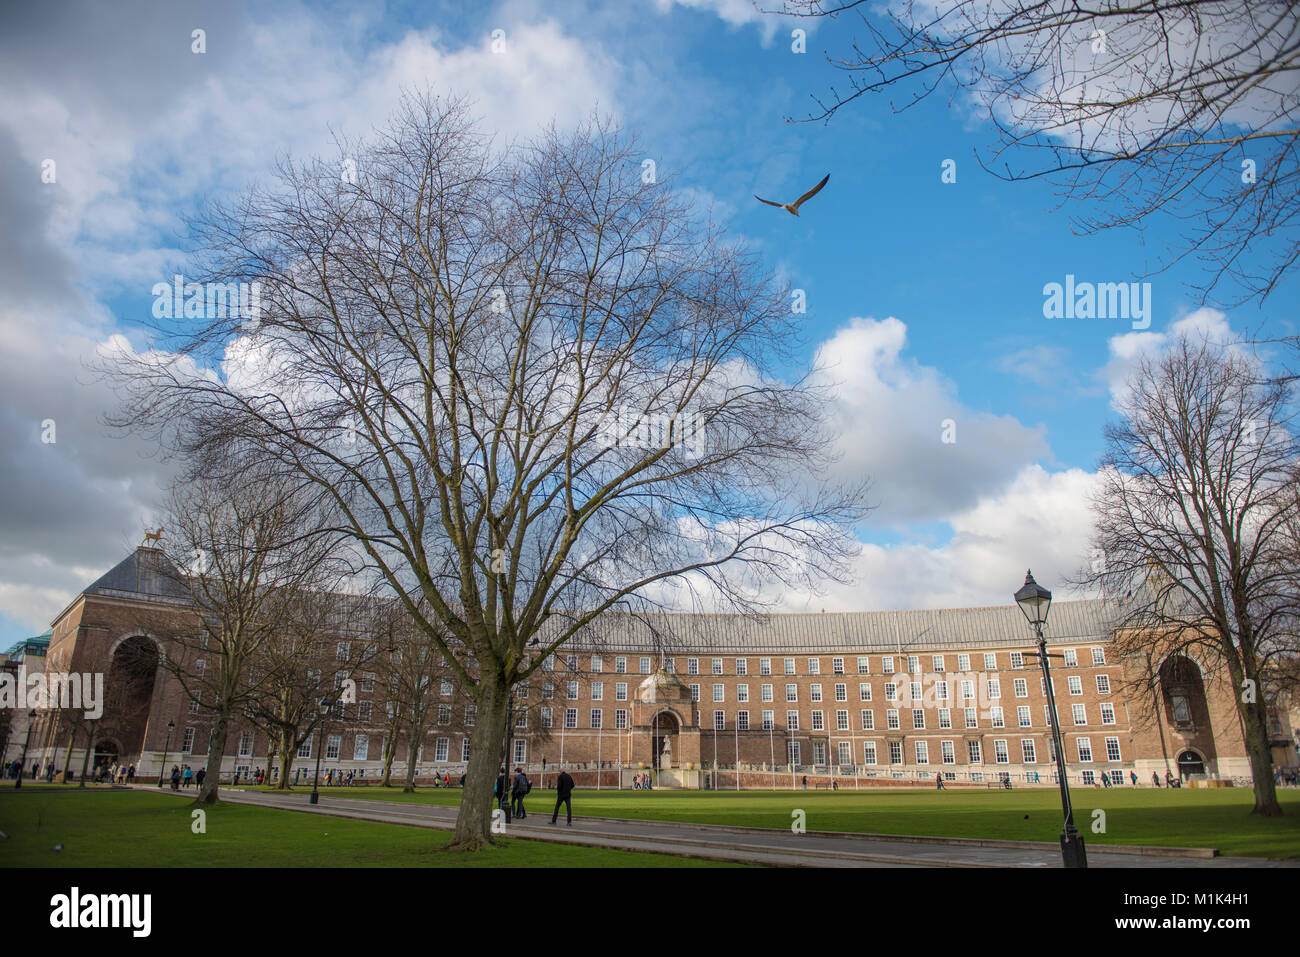 Una vista de la ciudad de Bristol Consejo del Colegio verde, cerca de la Catedral, con árboles y una lámpara de la calle, un intenso azul cielo y nubes, 1 gaviota Foto de stock